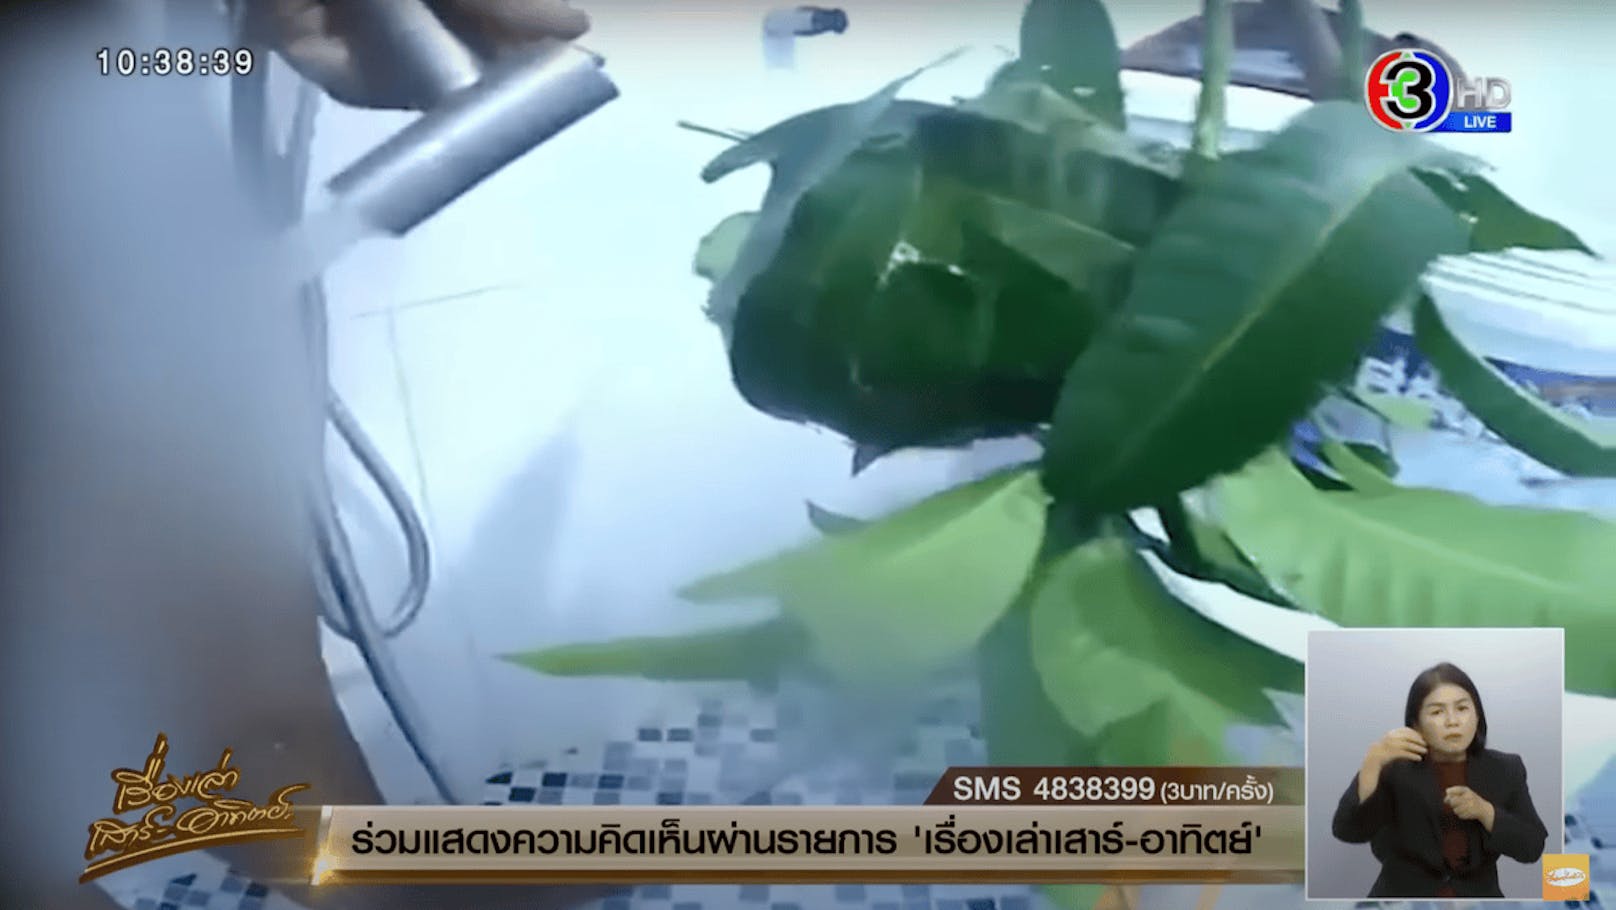 Direkt danach ist zu sehen, wie der Mann mit einem Wasserstrahl versucht, die Ameisen wieder loszuwerden. (Im Bild: Ausschnitt aus der "Morningshow" von Channel 3 in Thailand)